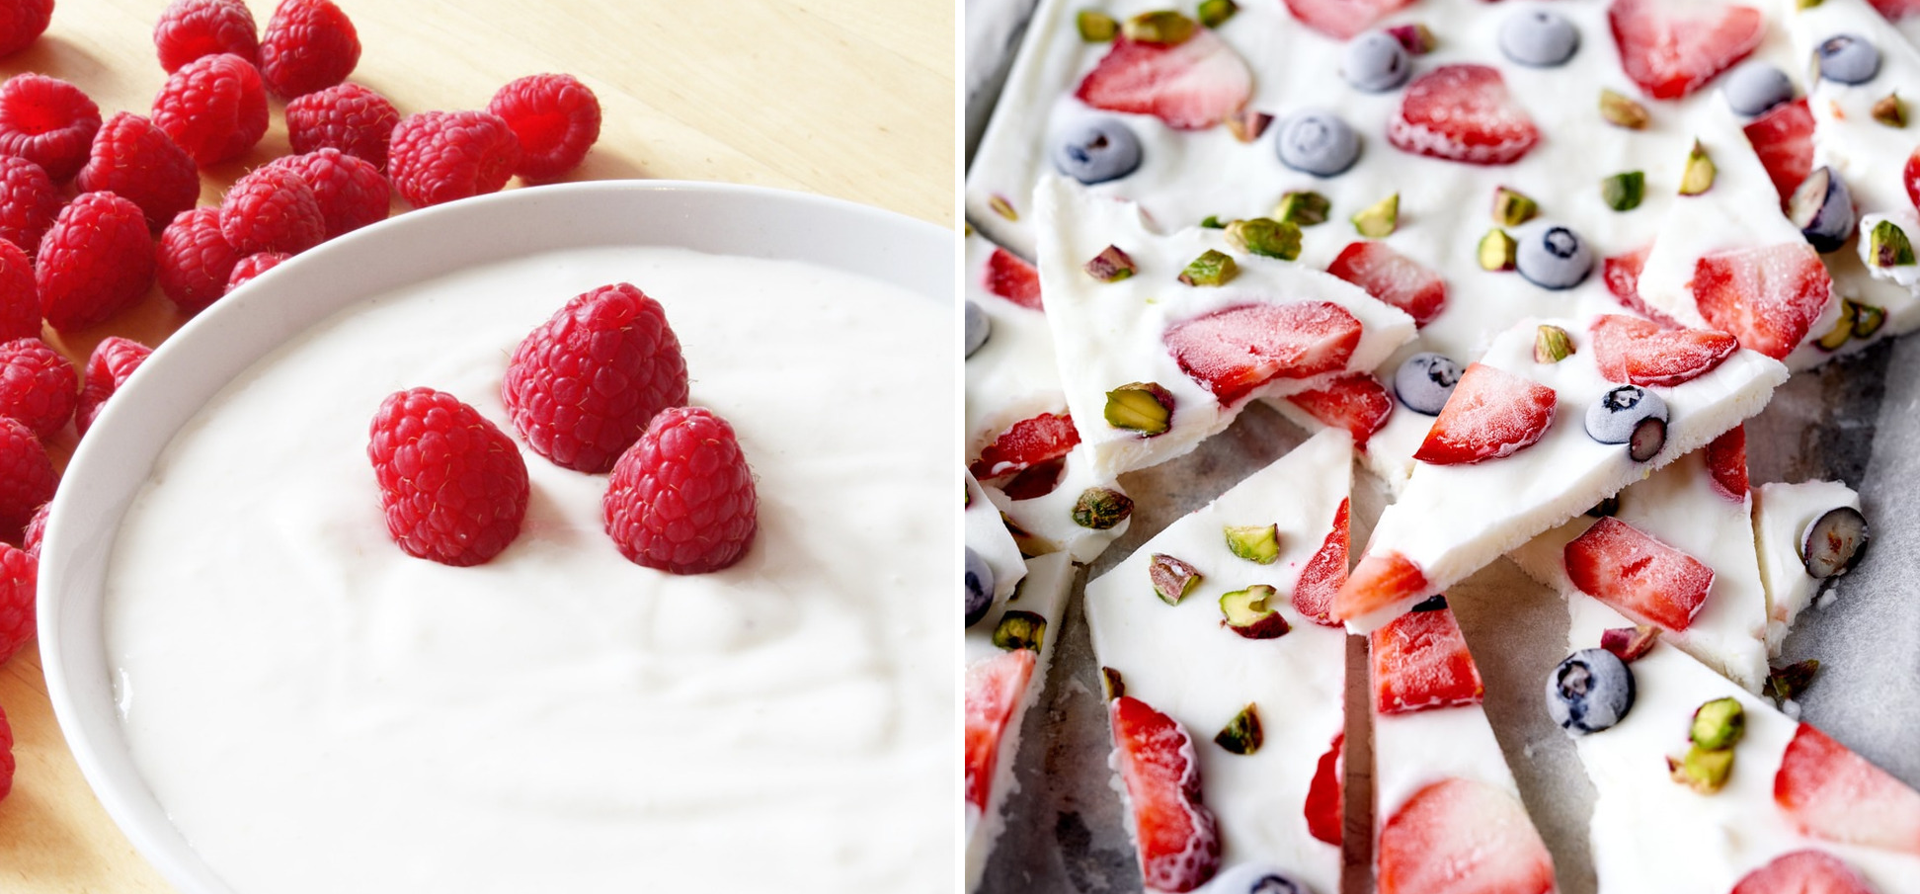 Jak przygotować deser jogurtowy bez cukru?